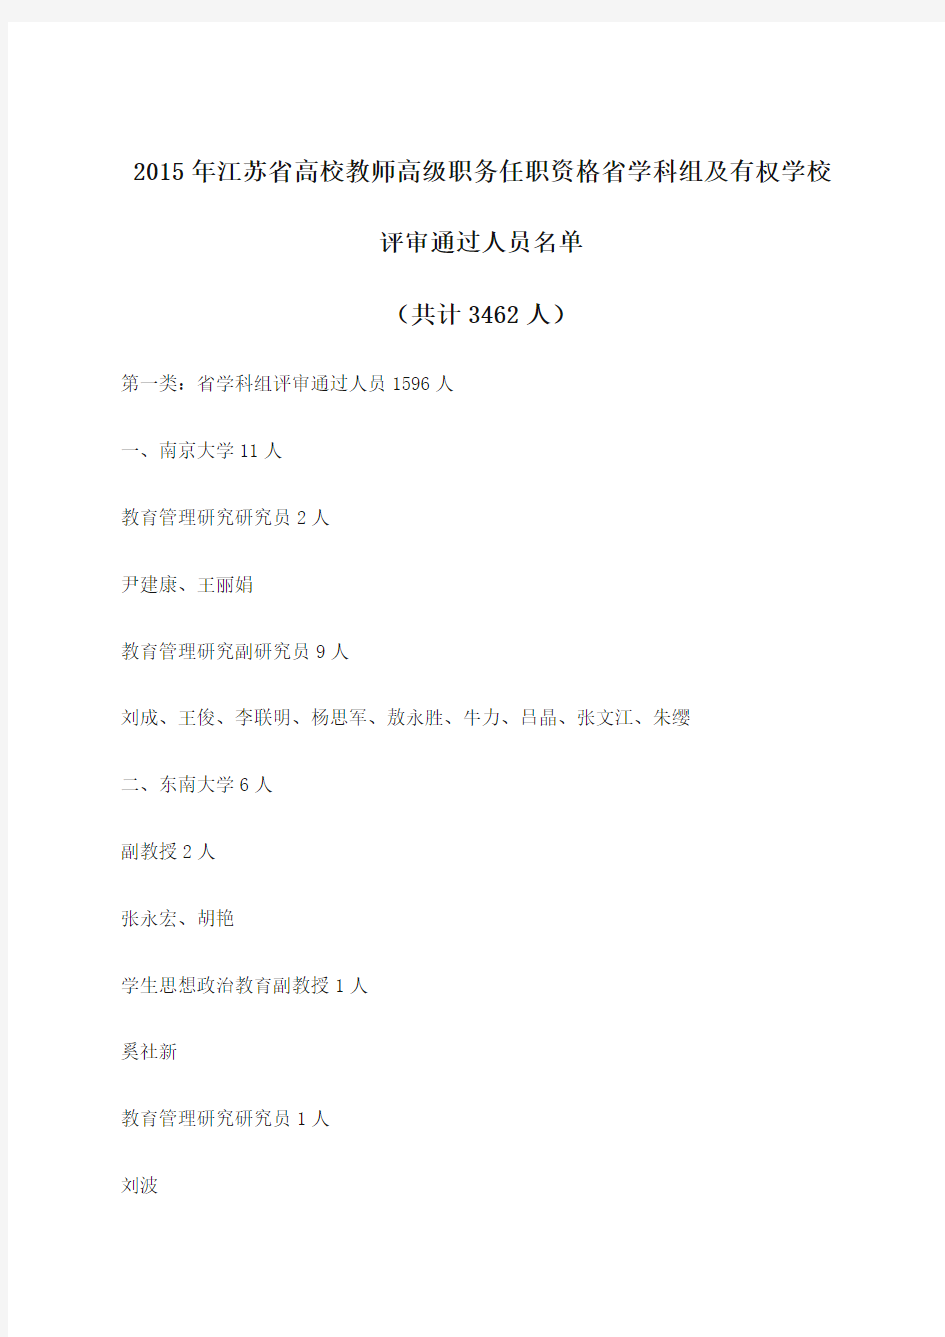 2015年江苏省高校教师高级职务任职资格学科组评审结果公示